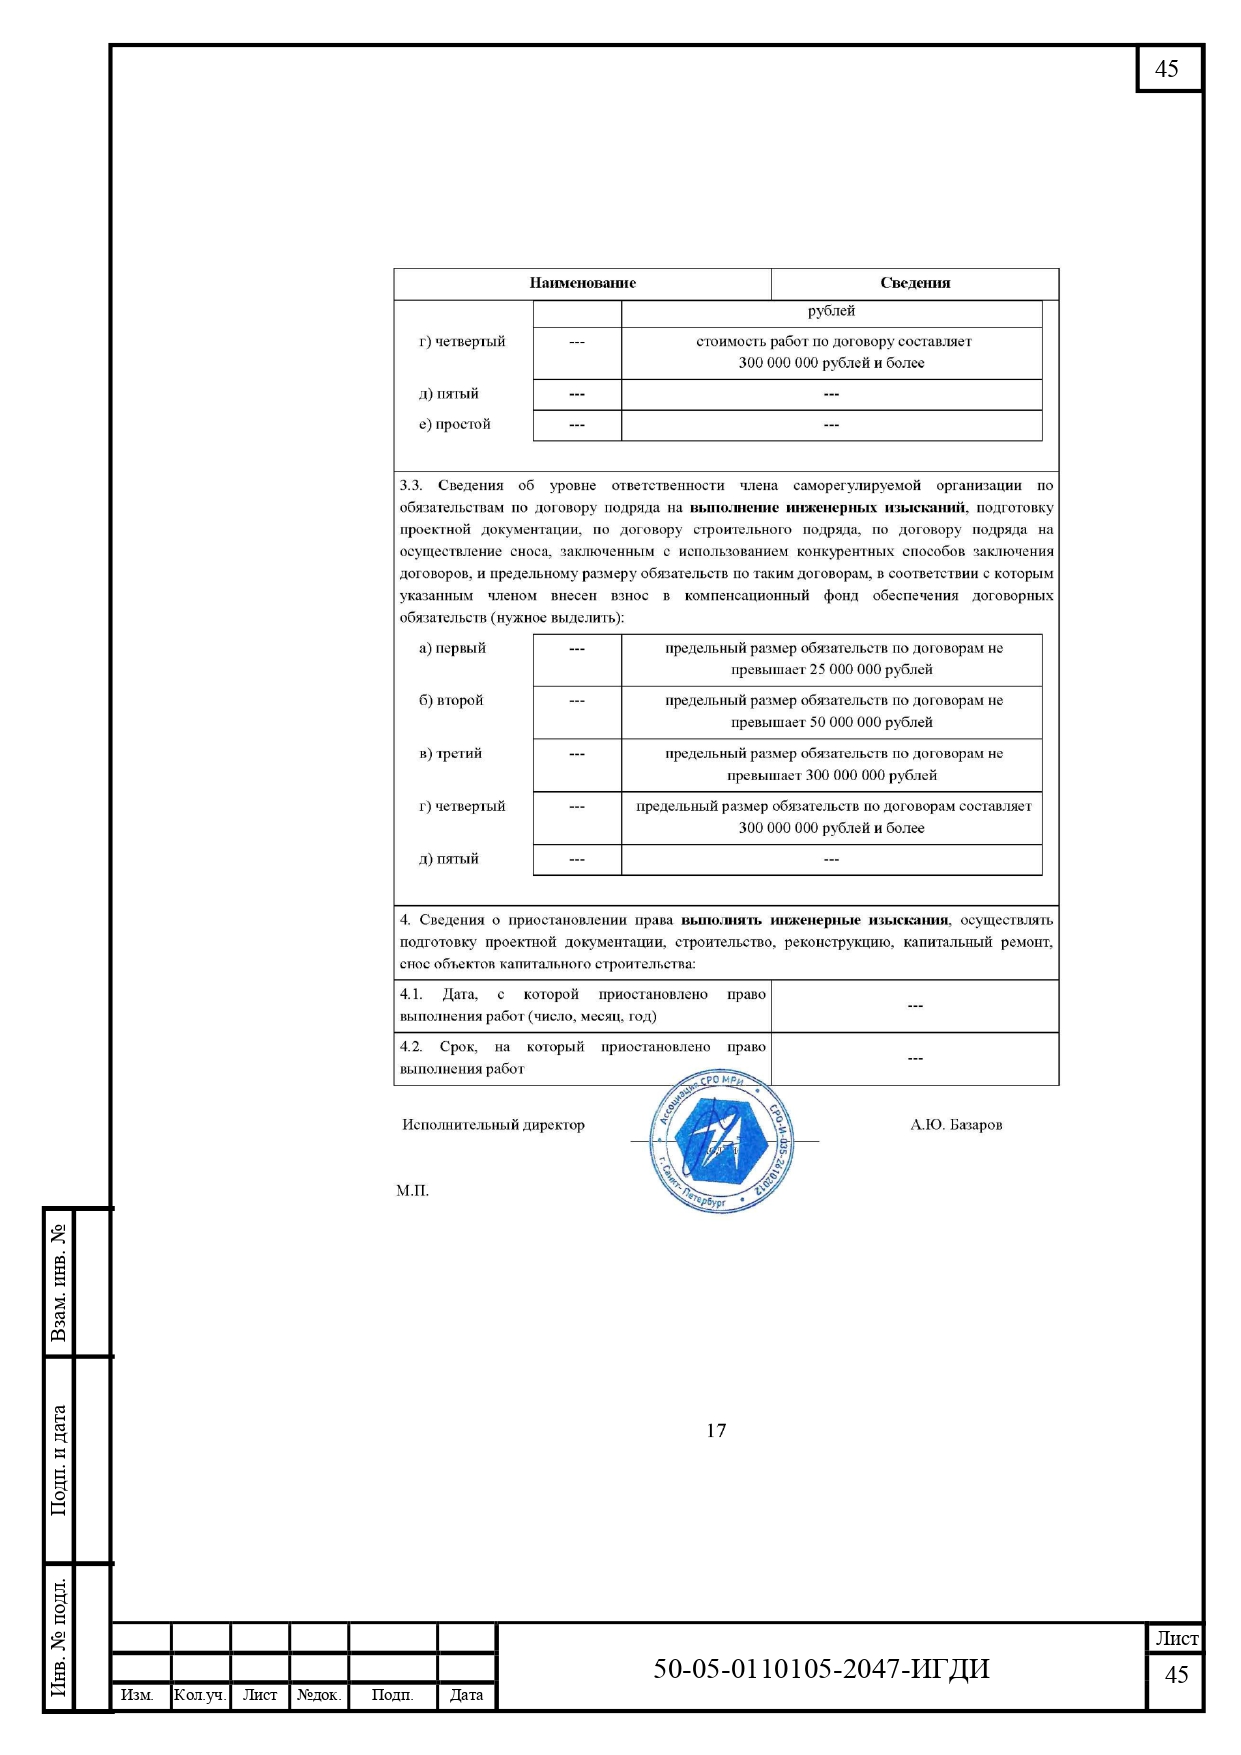 50-05-0110105-2047-ИГДИ-Технический отчет_page-0045